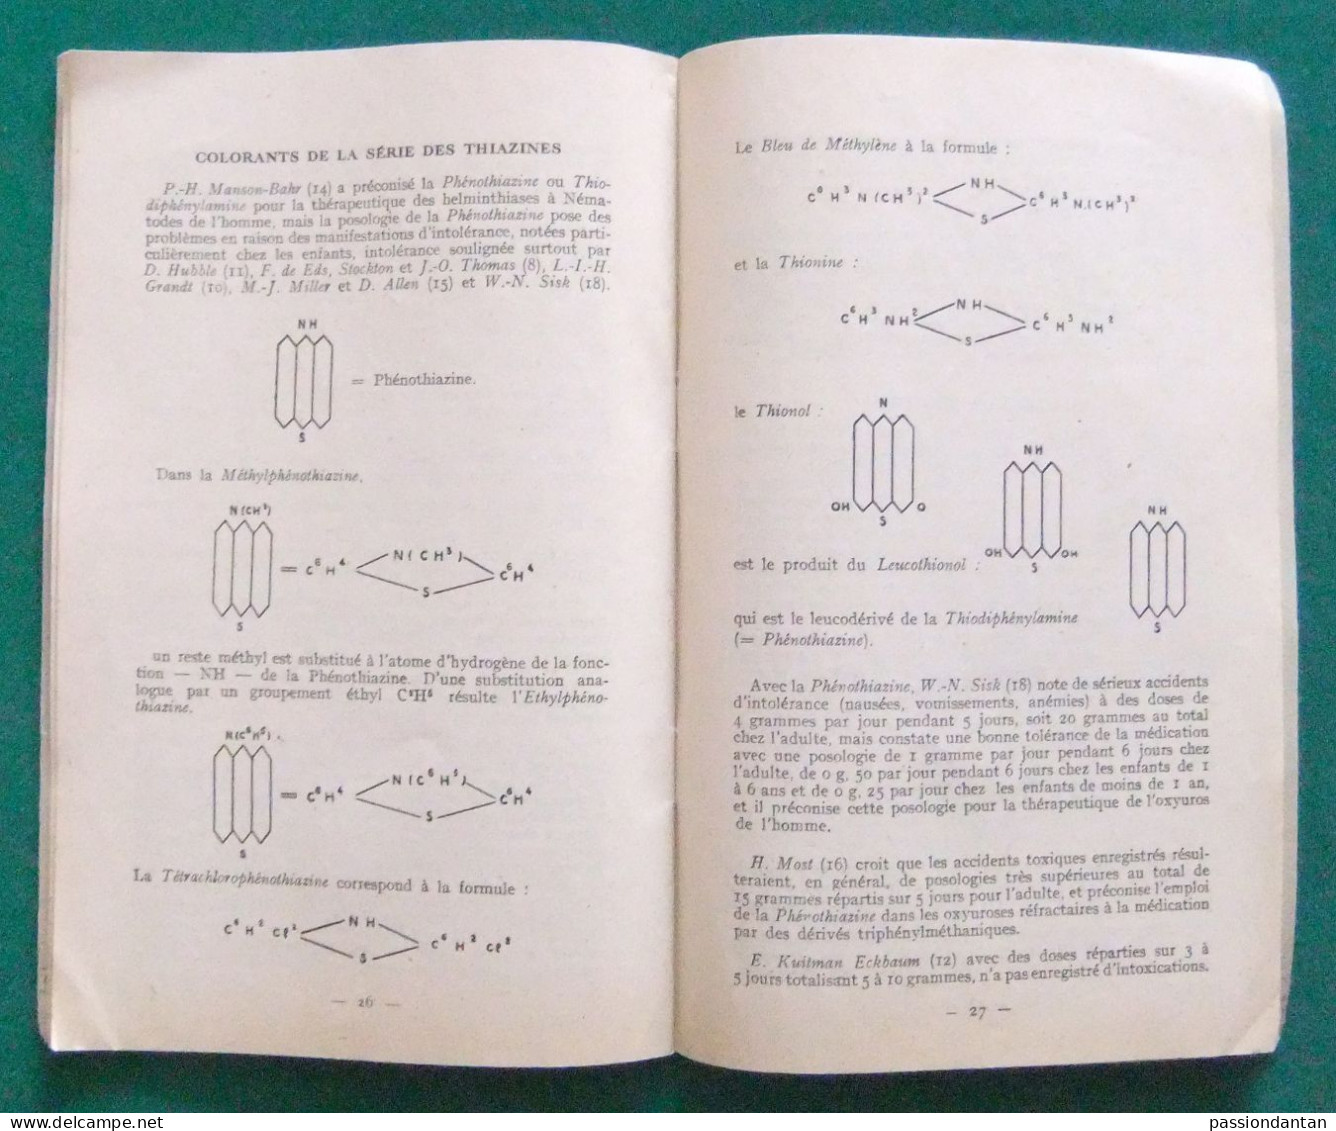 Bulletin N° 8 Des Années 1950 Des Laboratoires Bouillet Sis Square Thiers à Paris 16ème - L'Oxyure Et L'Oxyurose - Medicina & Salute